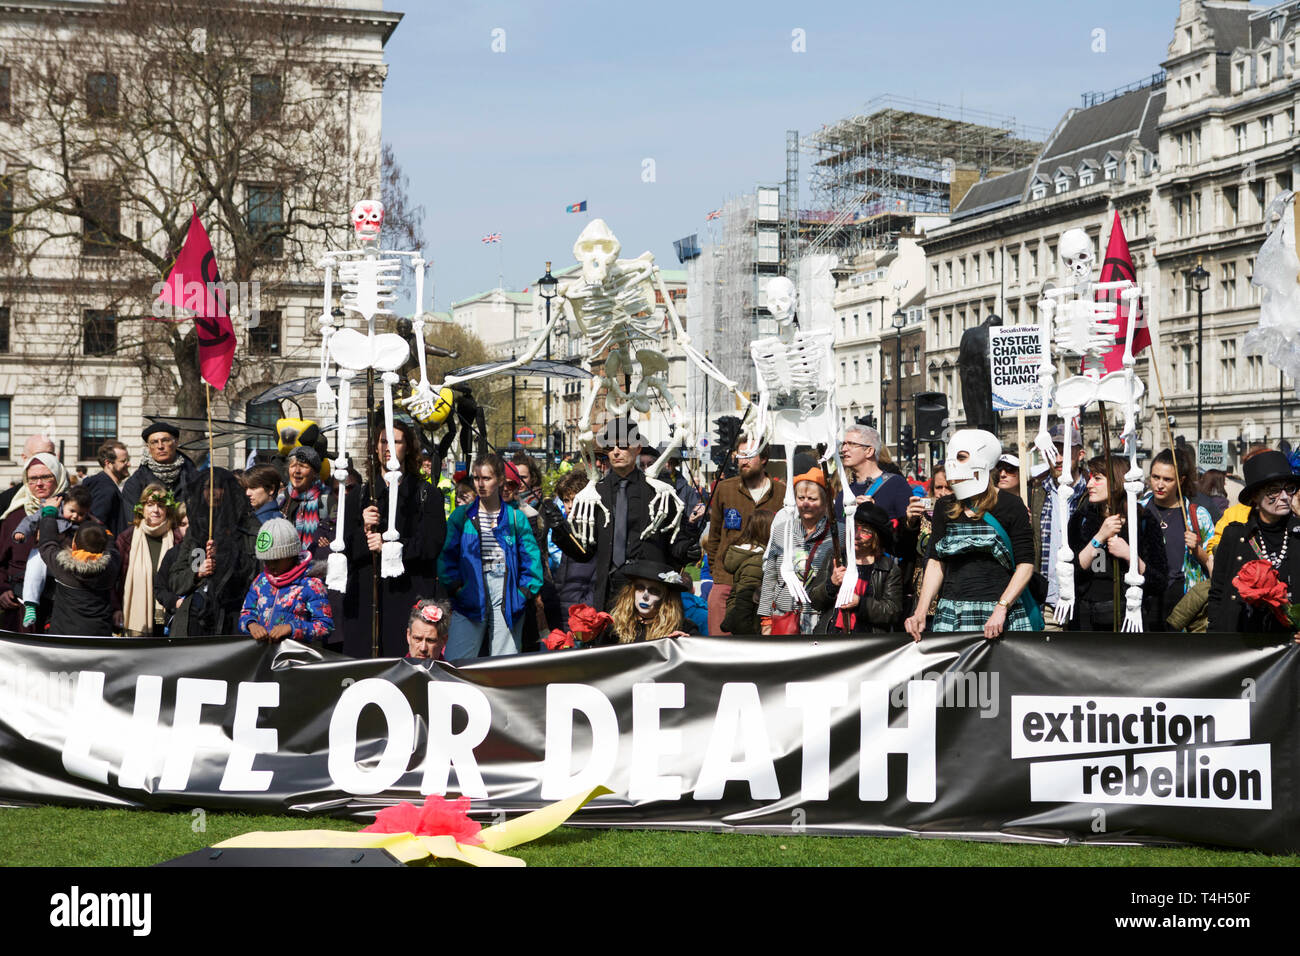 Protestant contre la rébellion : Extinction Londres - Protestation de l'environnement exigeant des militants - les gouvernements prennent des mesures contre le changement climatique. Banque D'Images